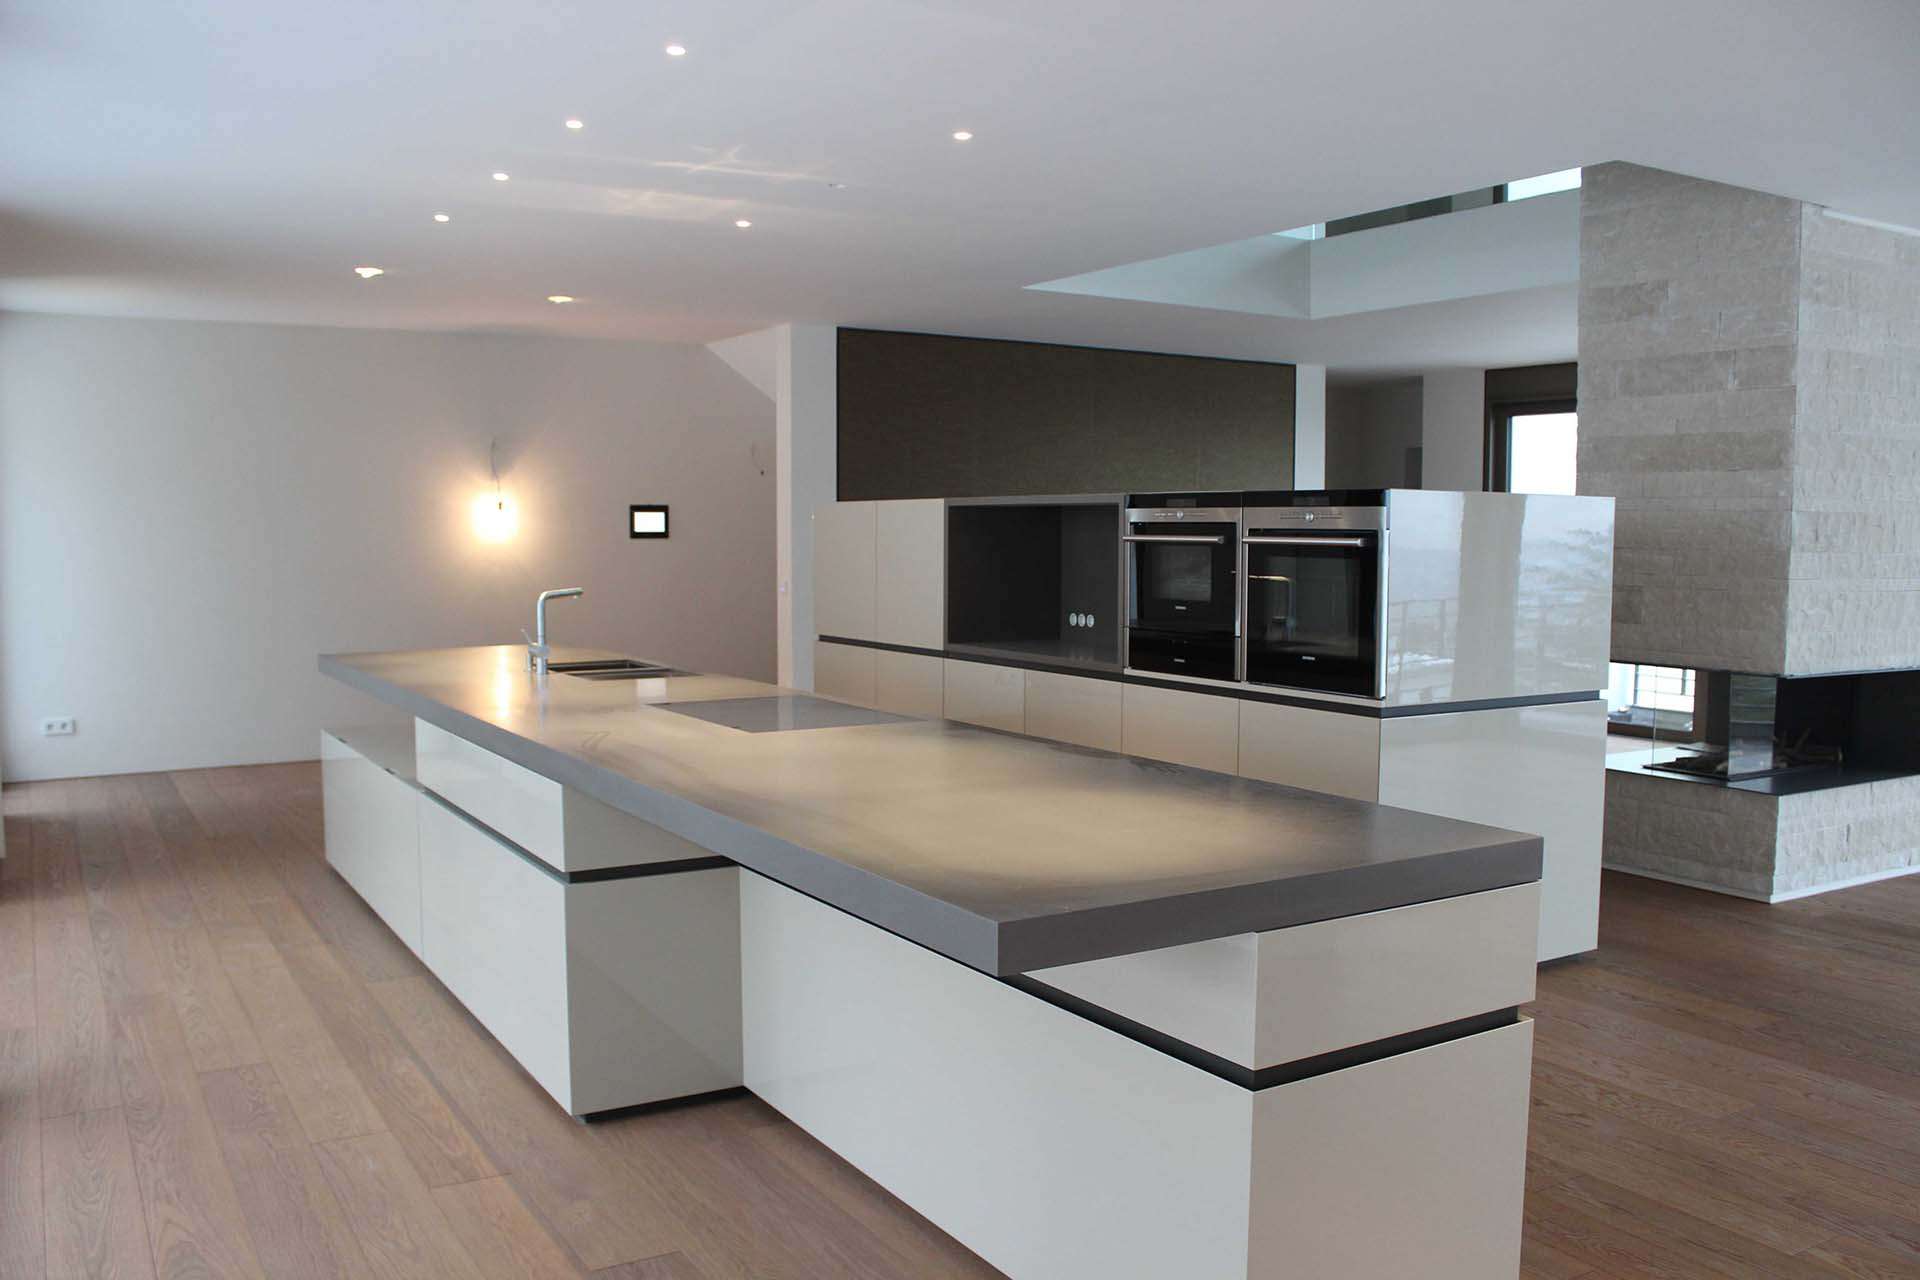 Freistehende Küche mit zwei Blöcken. Massive und dicke Arbeitsplatte in grau. Sitzmöglichkeit bzw. Bar am Küchenblock/Kücheninsel.